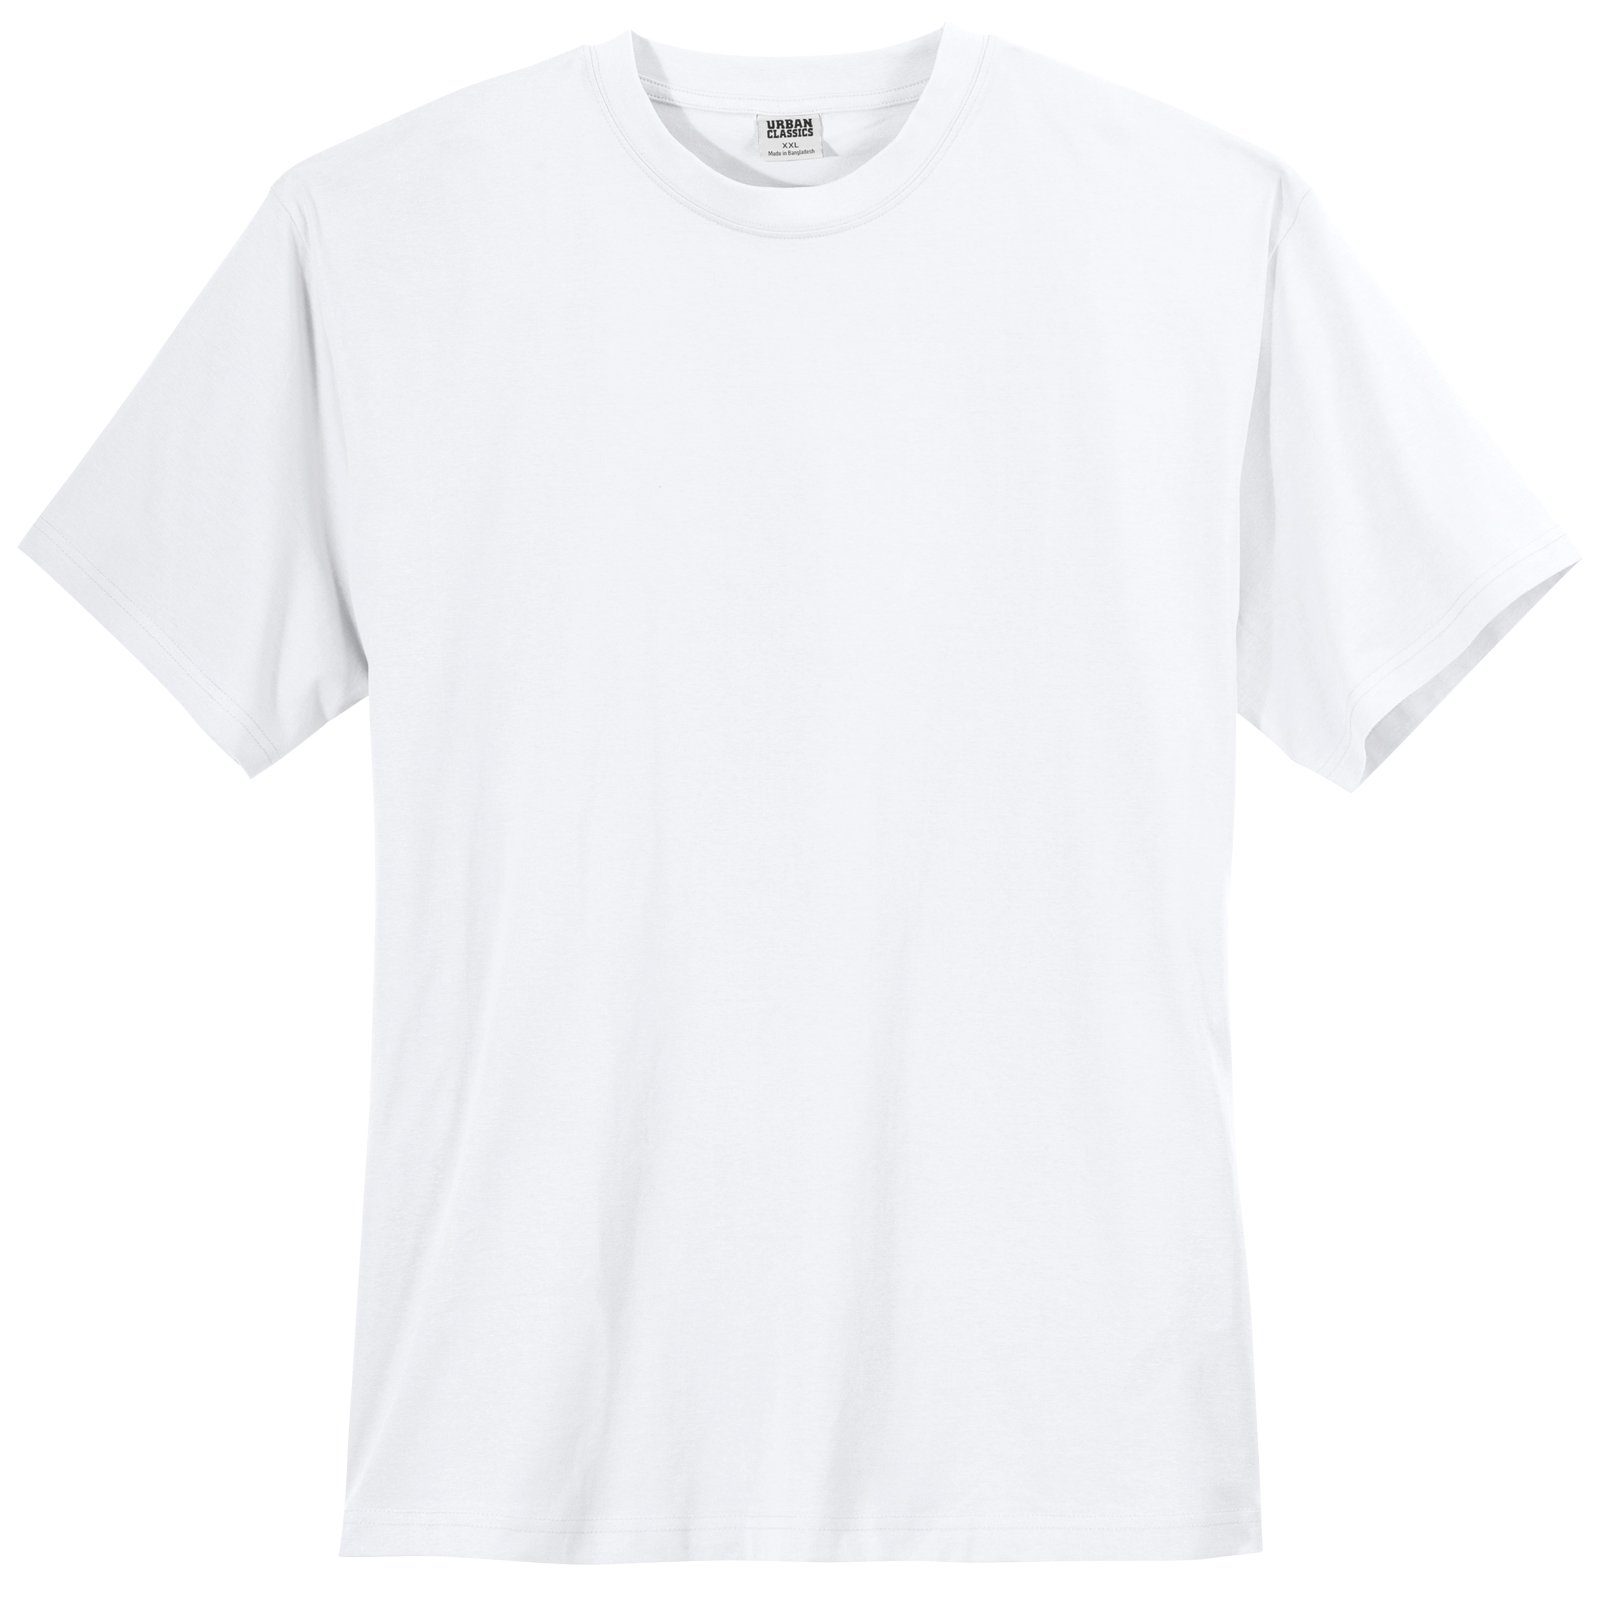 Endpreis im Ausverkauf Urban Classics Plus Übergrößen T-Shirt weiß Size Urban Classics Rundhalsshirt Herren